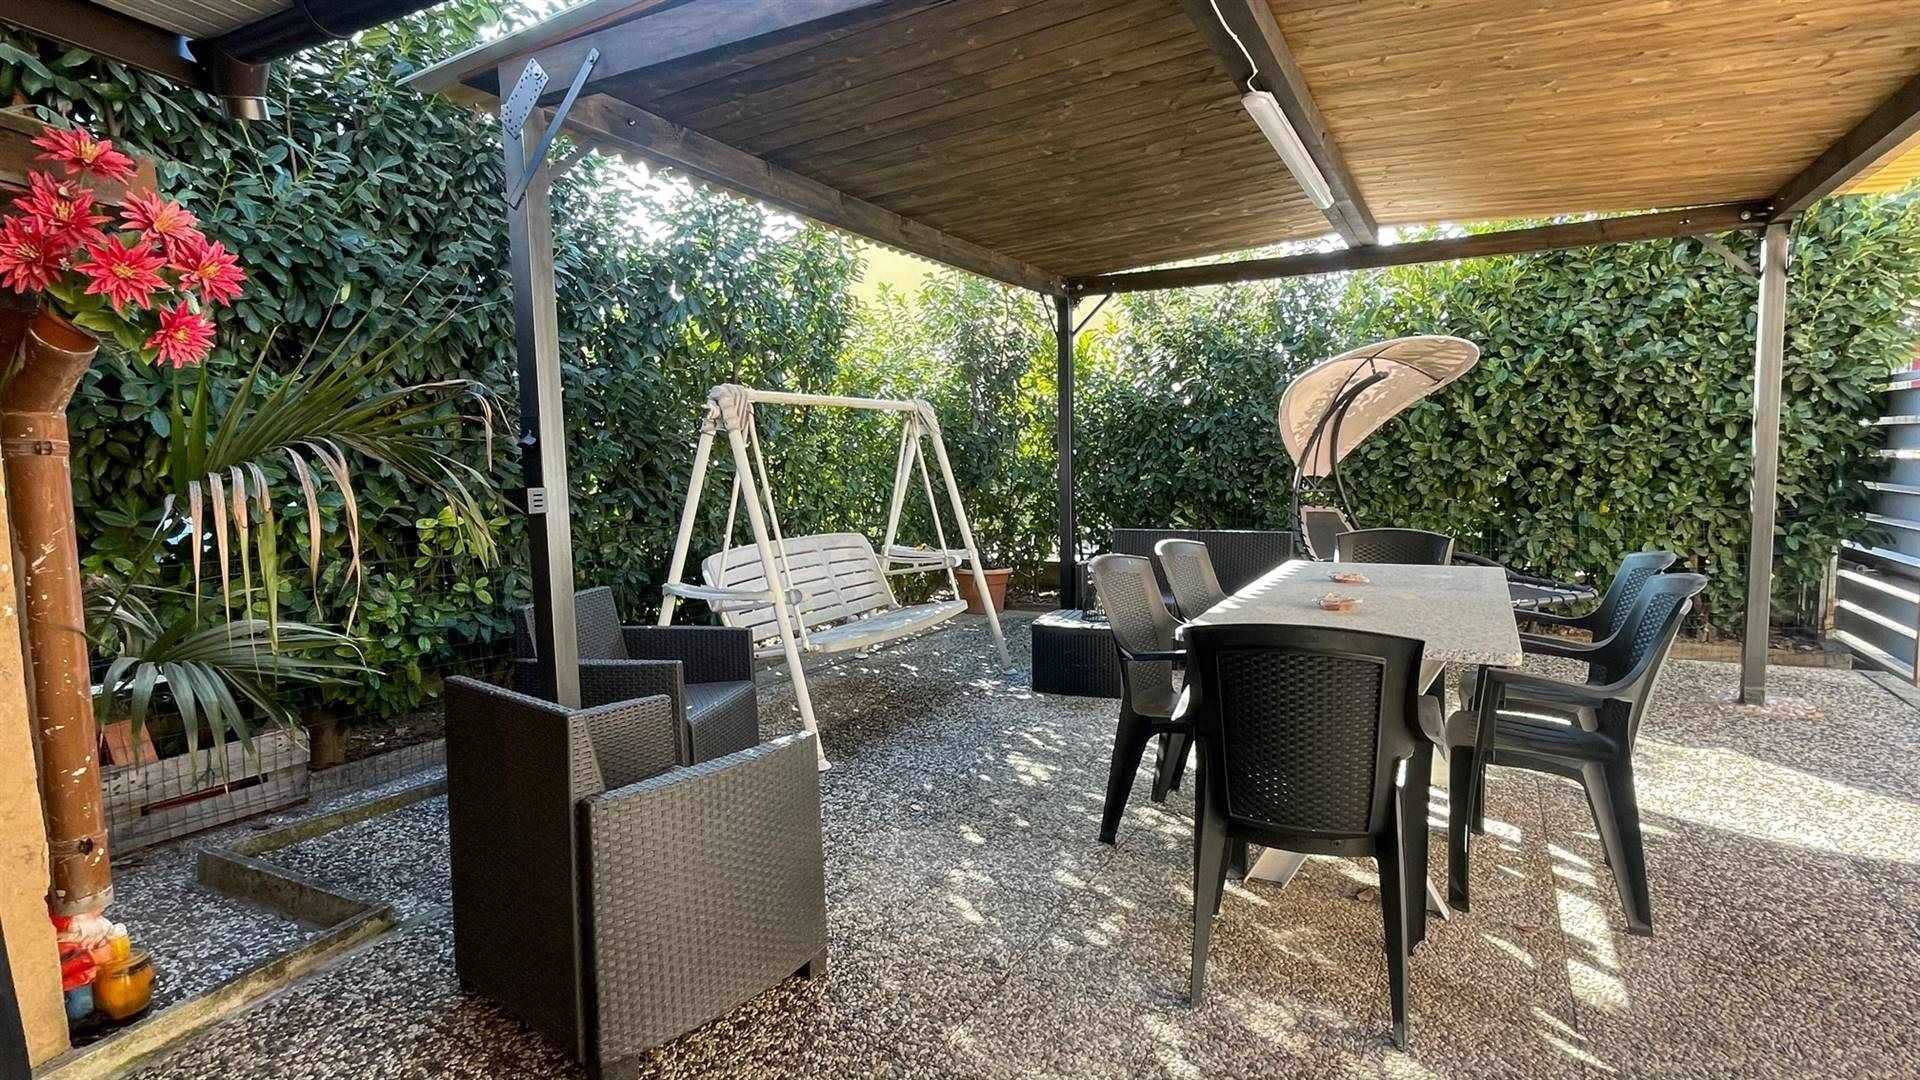 Villa in vendita a Calusco d'Adda, 5 locali, prezzo € 268.000 | PortaleAgenzieImmobiliari.it